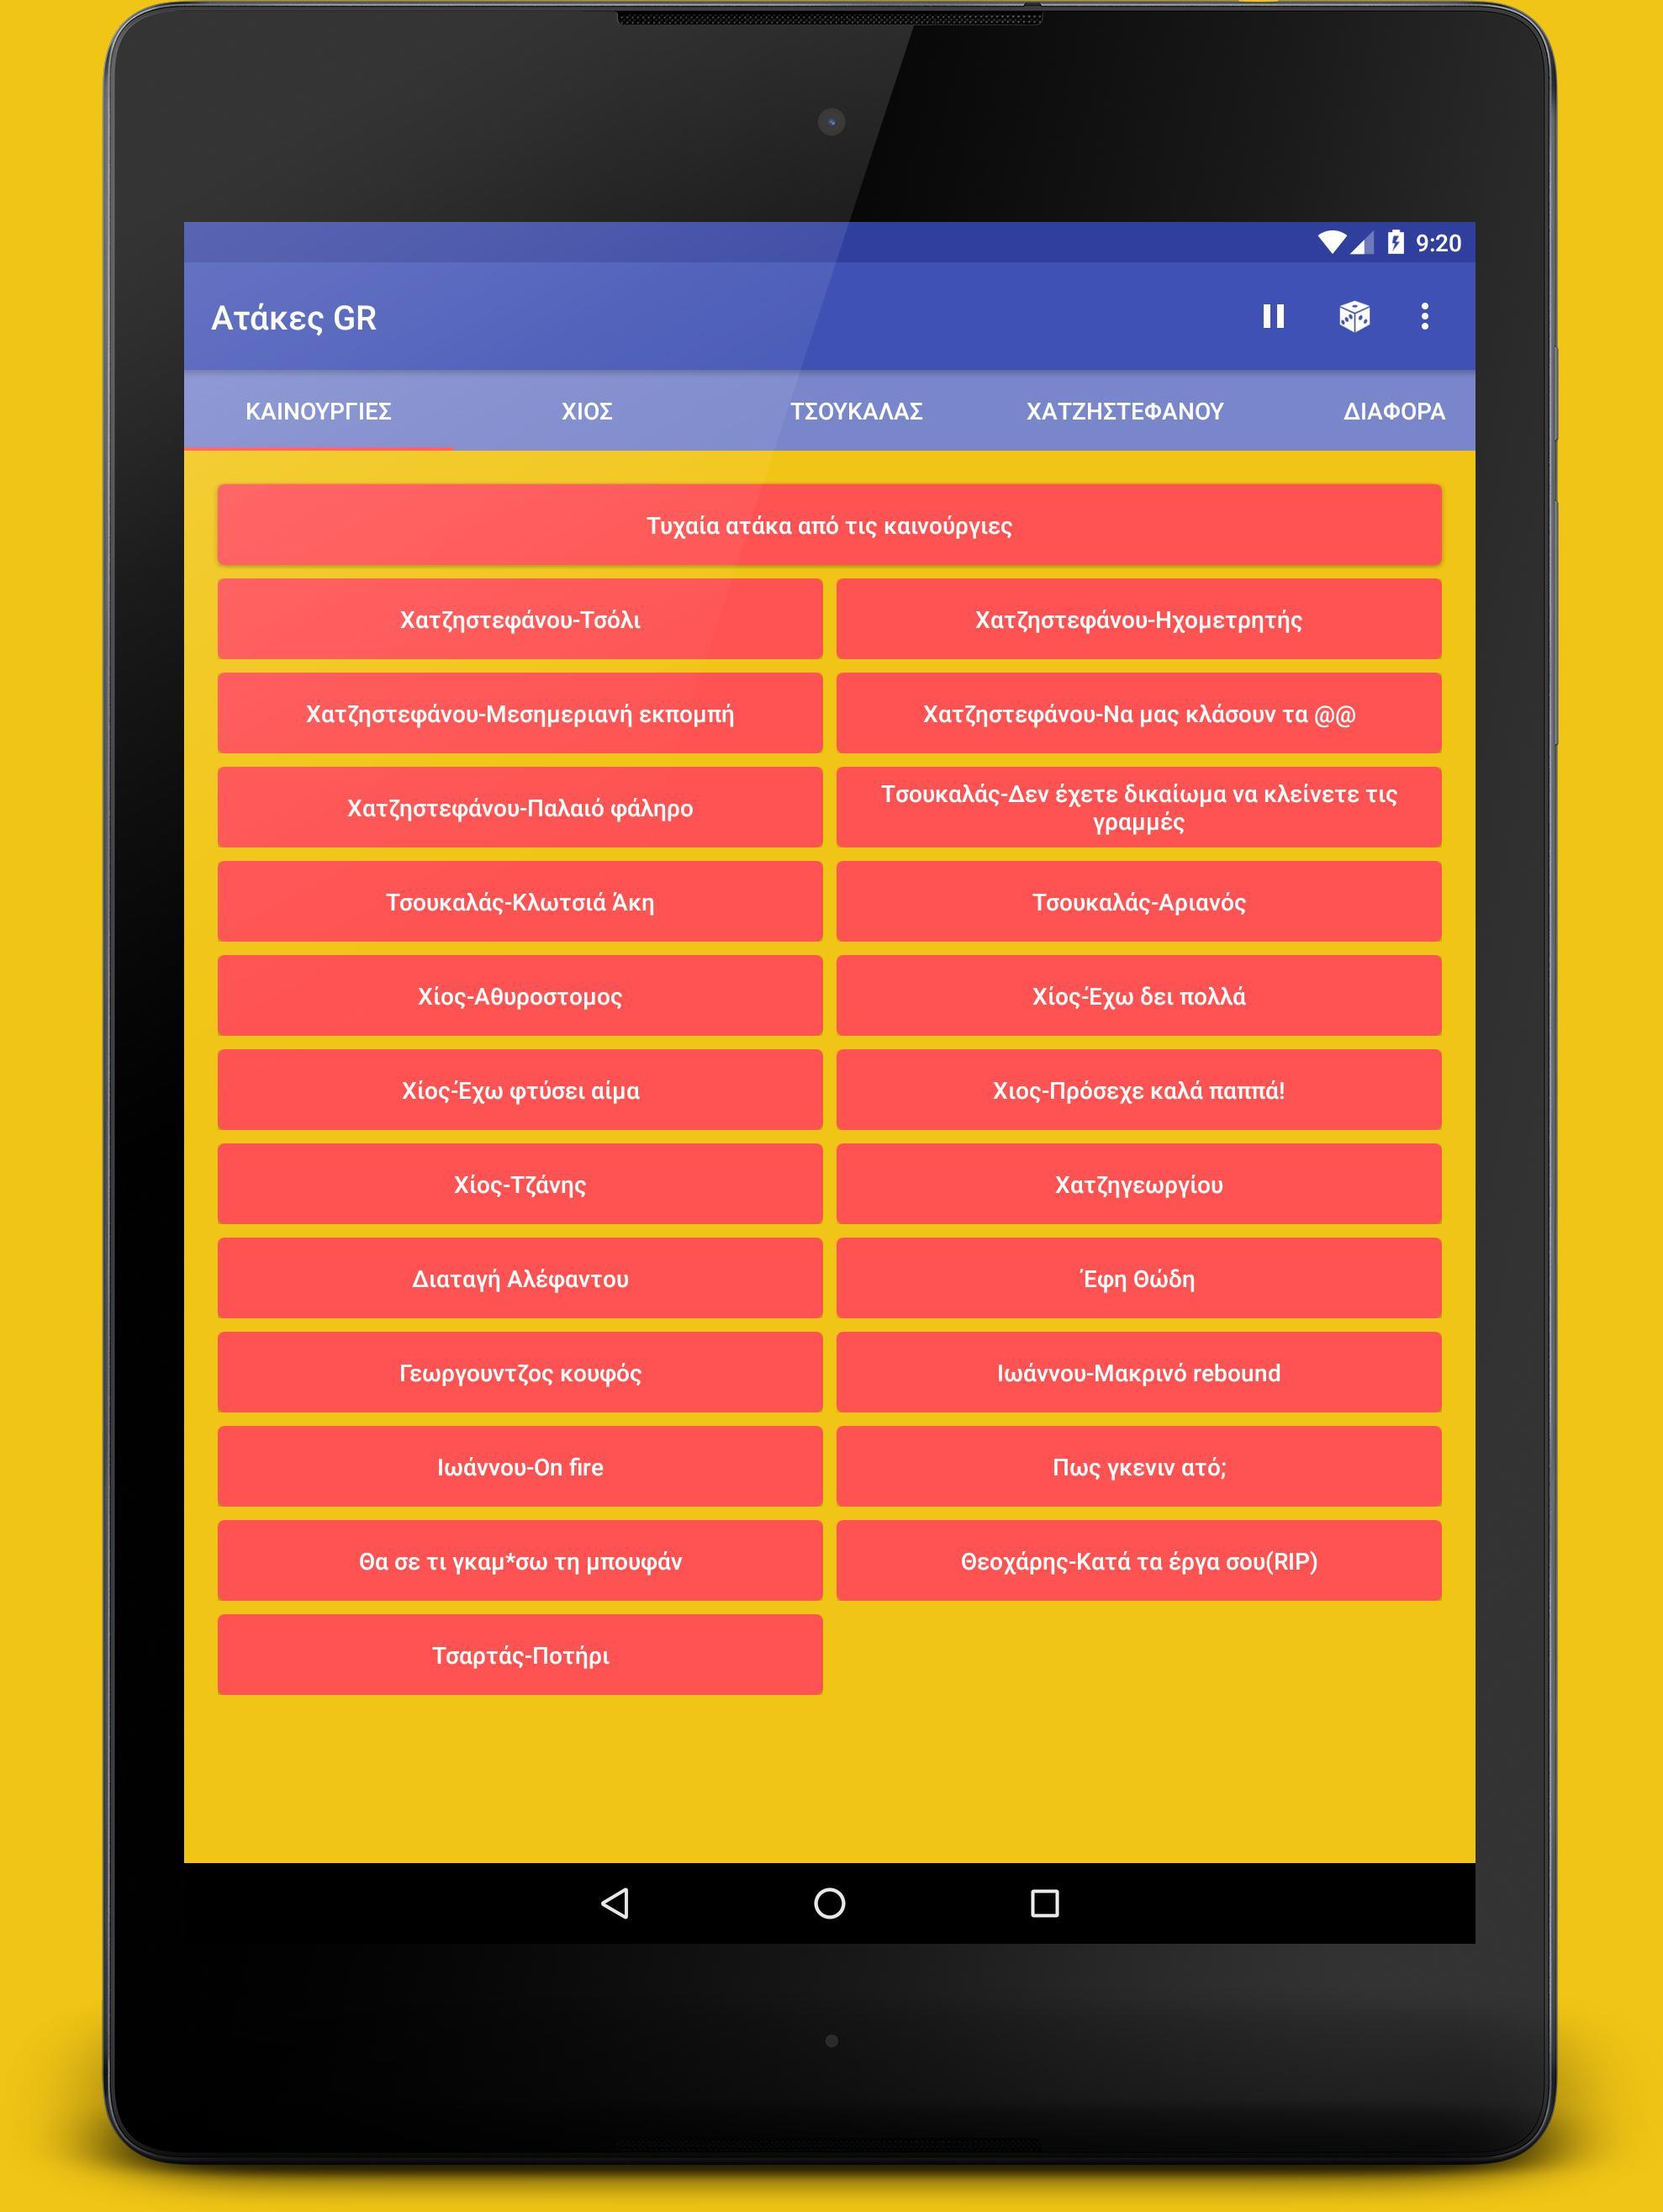 Ατάκες GR for Android - APK Download